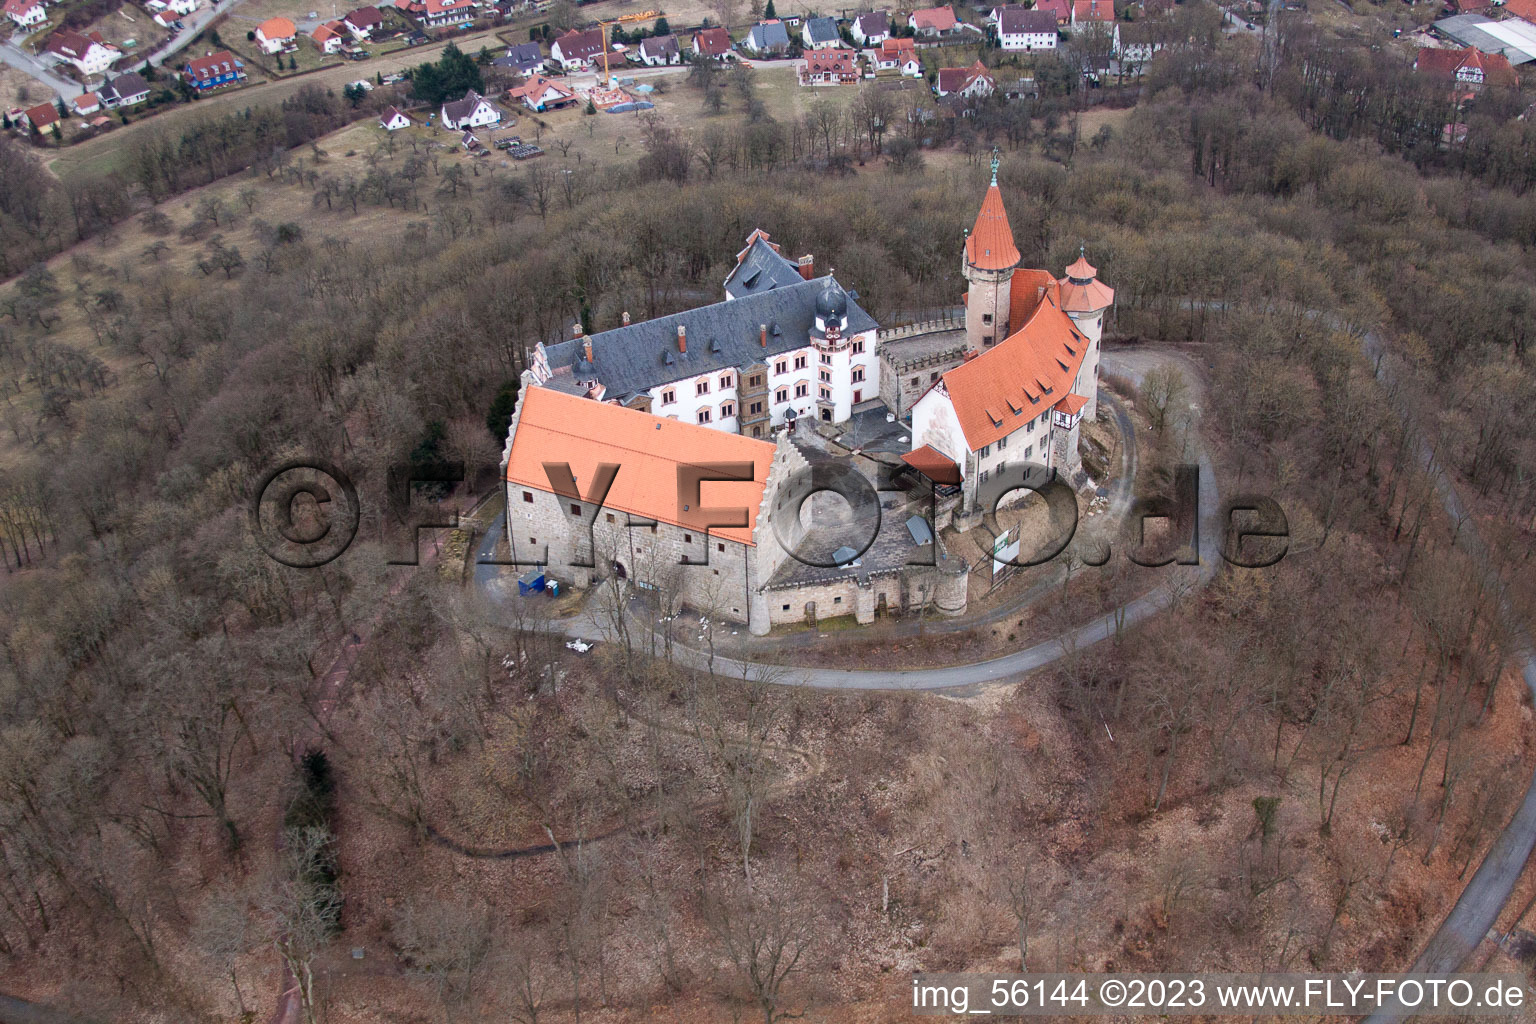 Luftbild von Veste Heldburg in Bad Colberg-Heldburg im Bundesland Thüringen, Deutschland